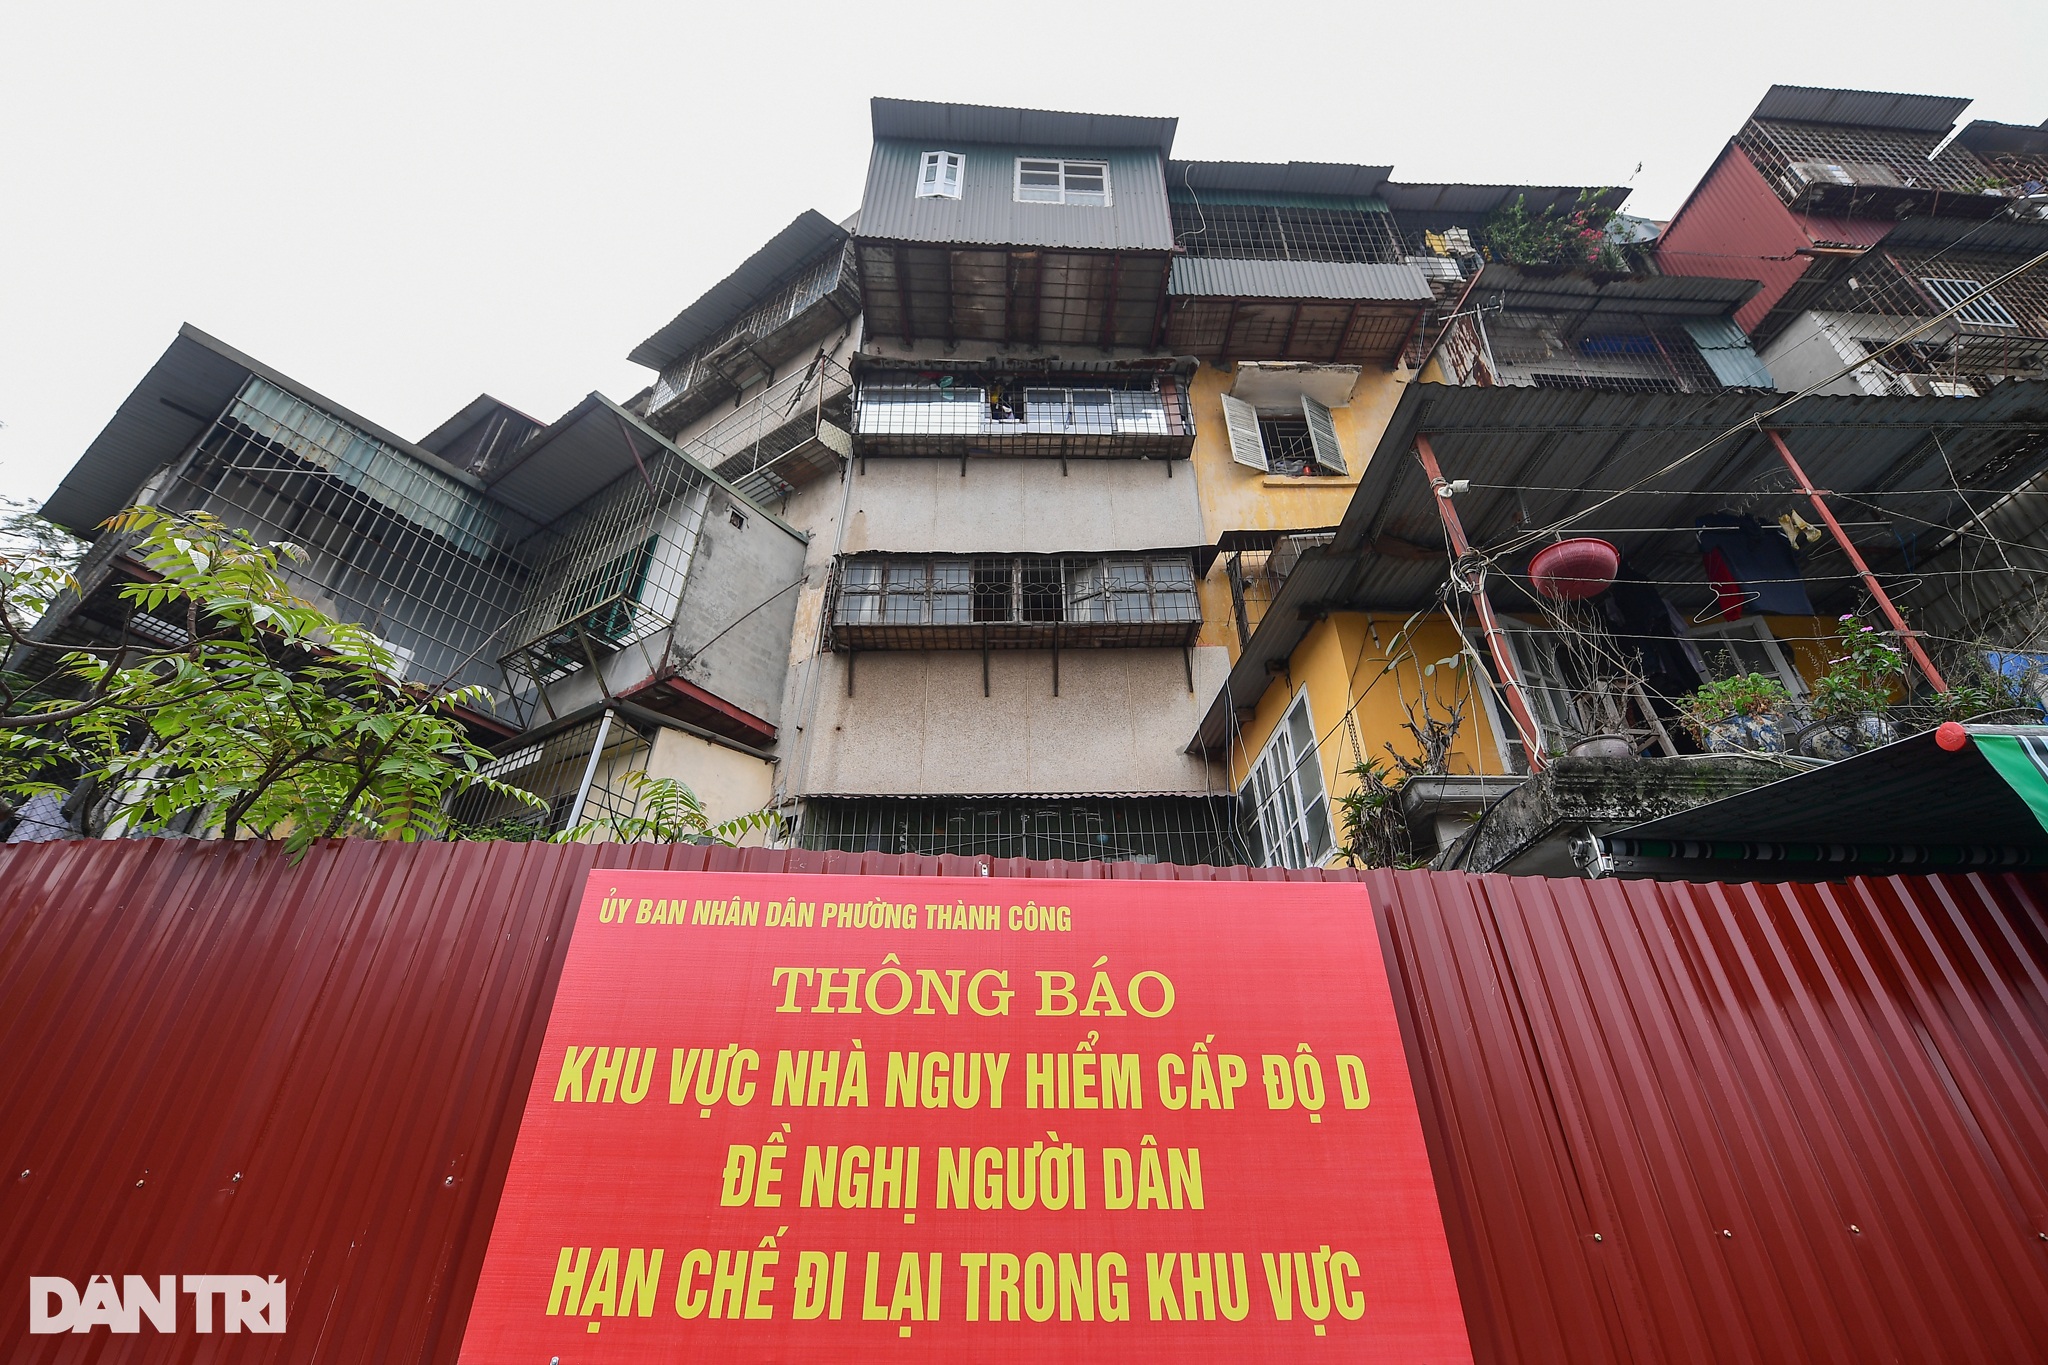 Dù được cảnh báo nguy hiểm, 21 hộ dân quyết bám trụ chung cư bị nghiêng đổ - 2